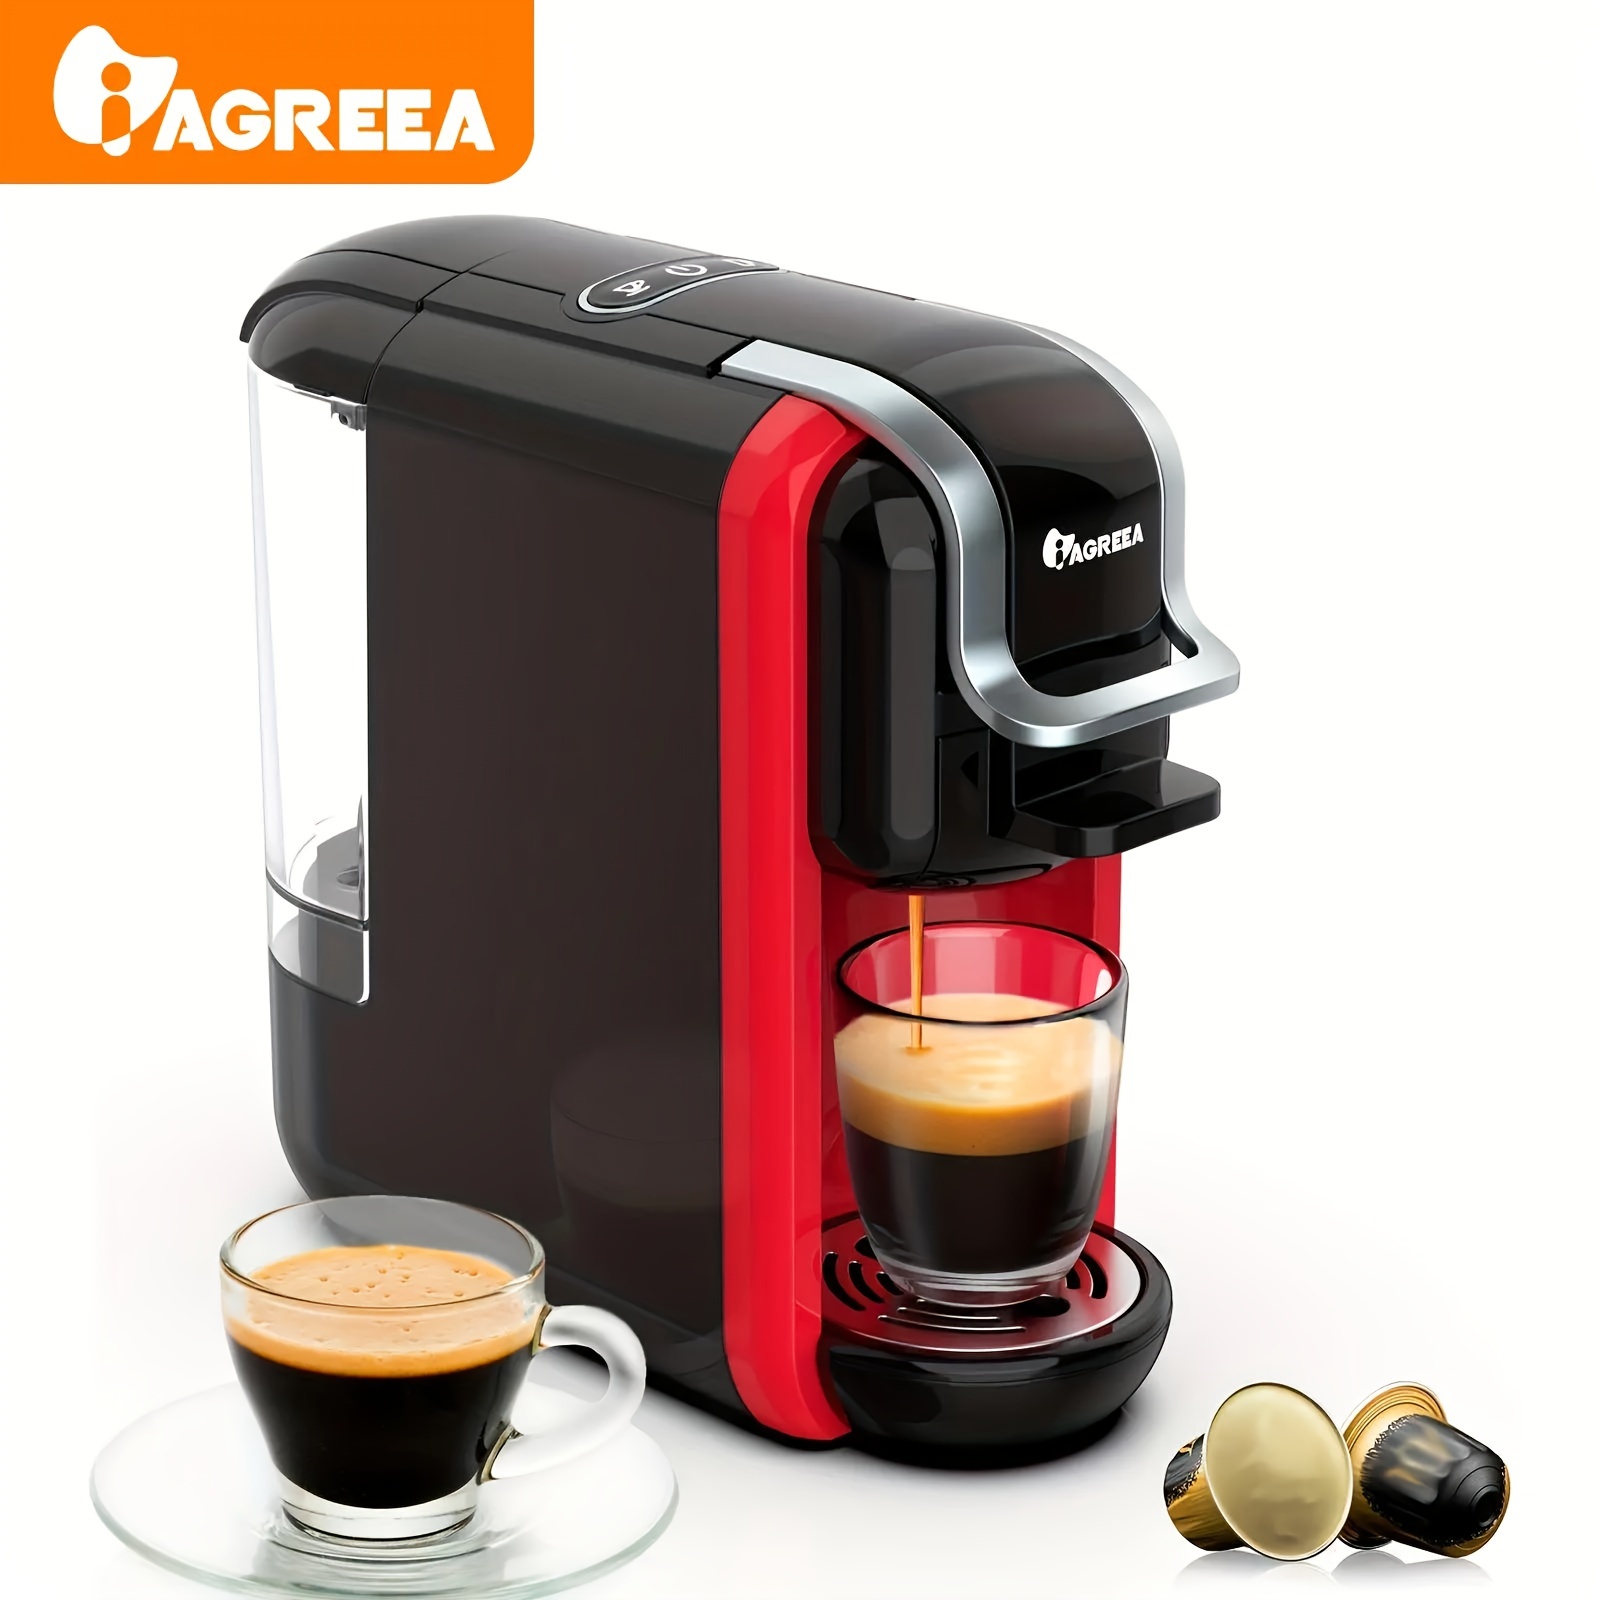 Compact Coffee Maker for Single Pods, HiBREW 5-in-1 Espresso Machine for  K-cup*/Nes* Original/DG*/ESE Pod/Espresso Powder Compatible, Cold/Hot Mode